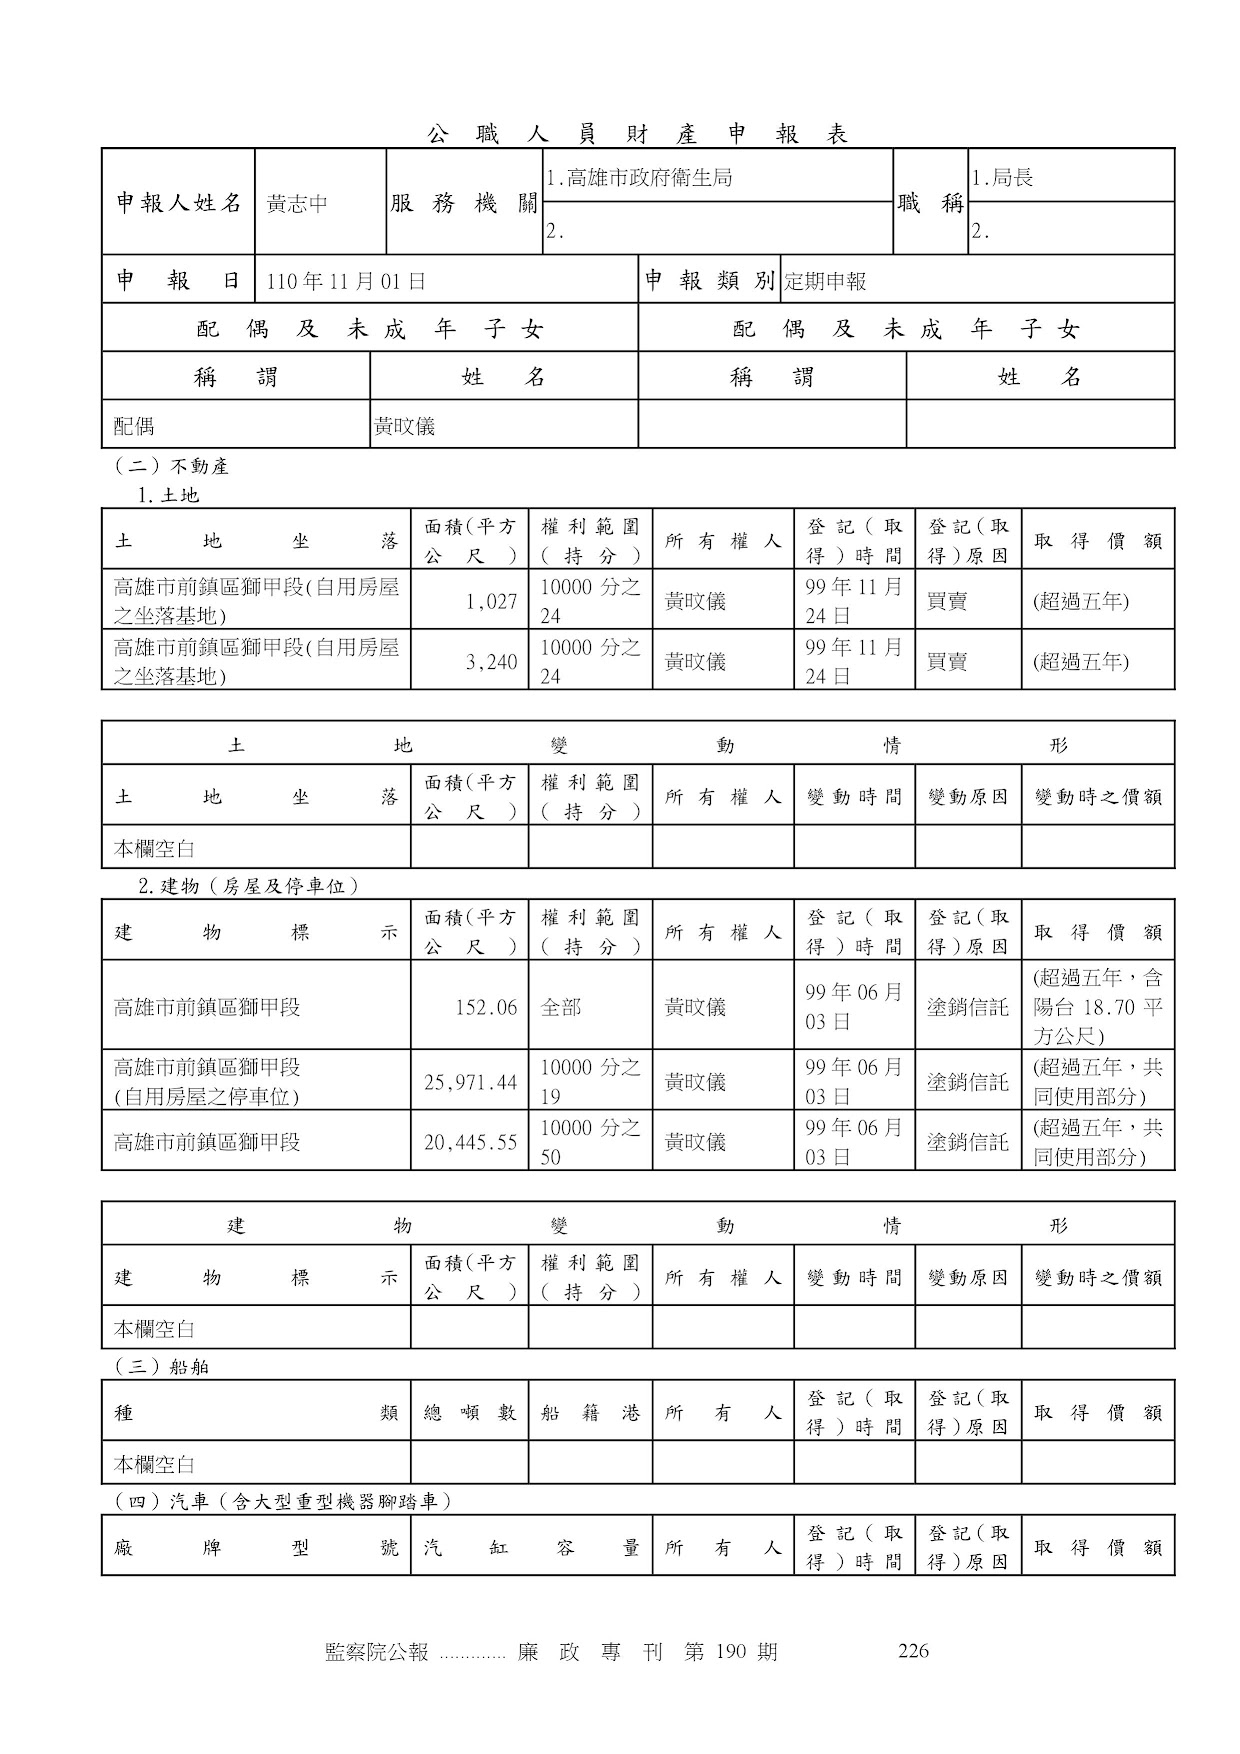 黃志中-公職人員財產申報資料-廉政專刊第190期